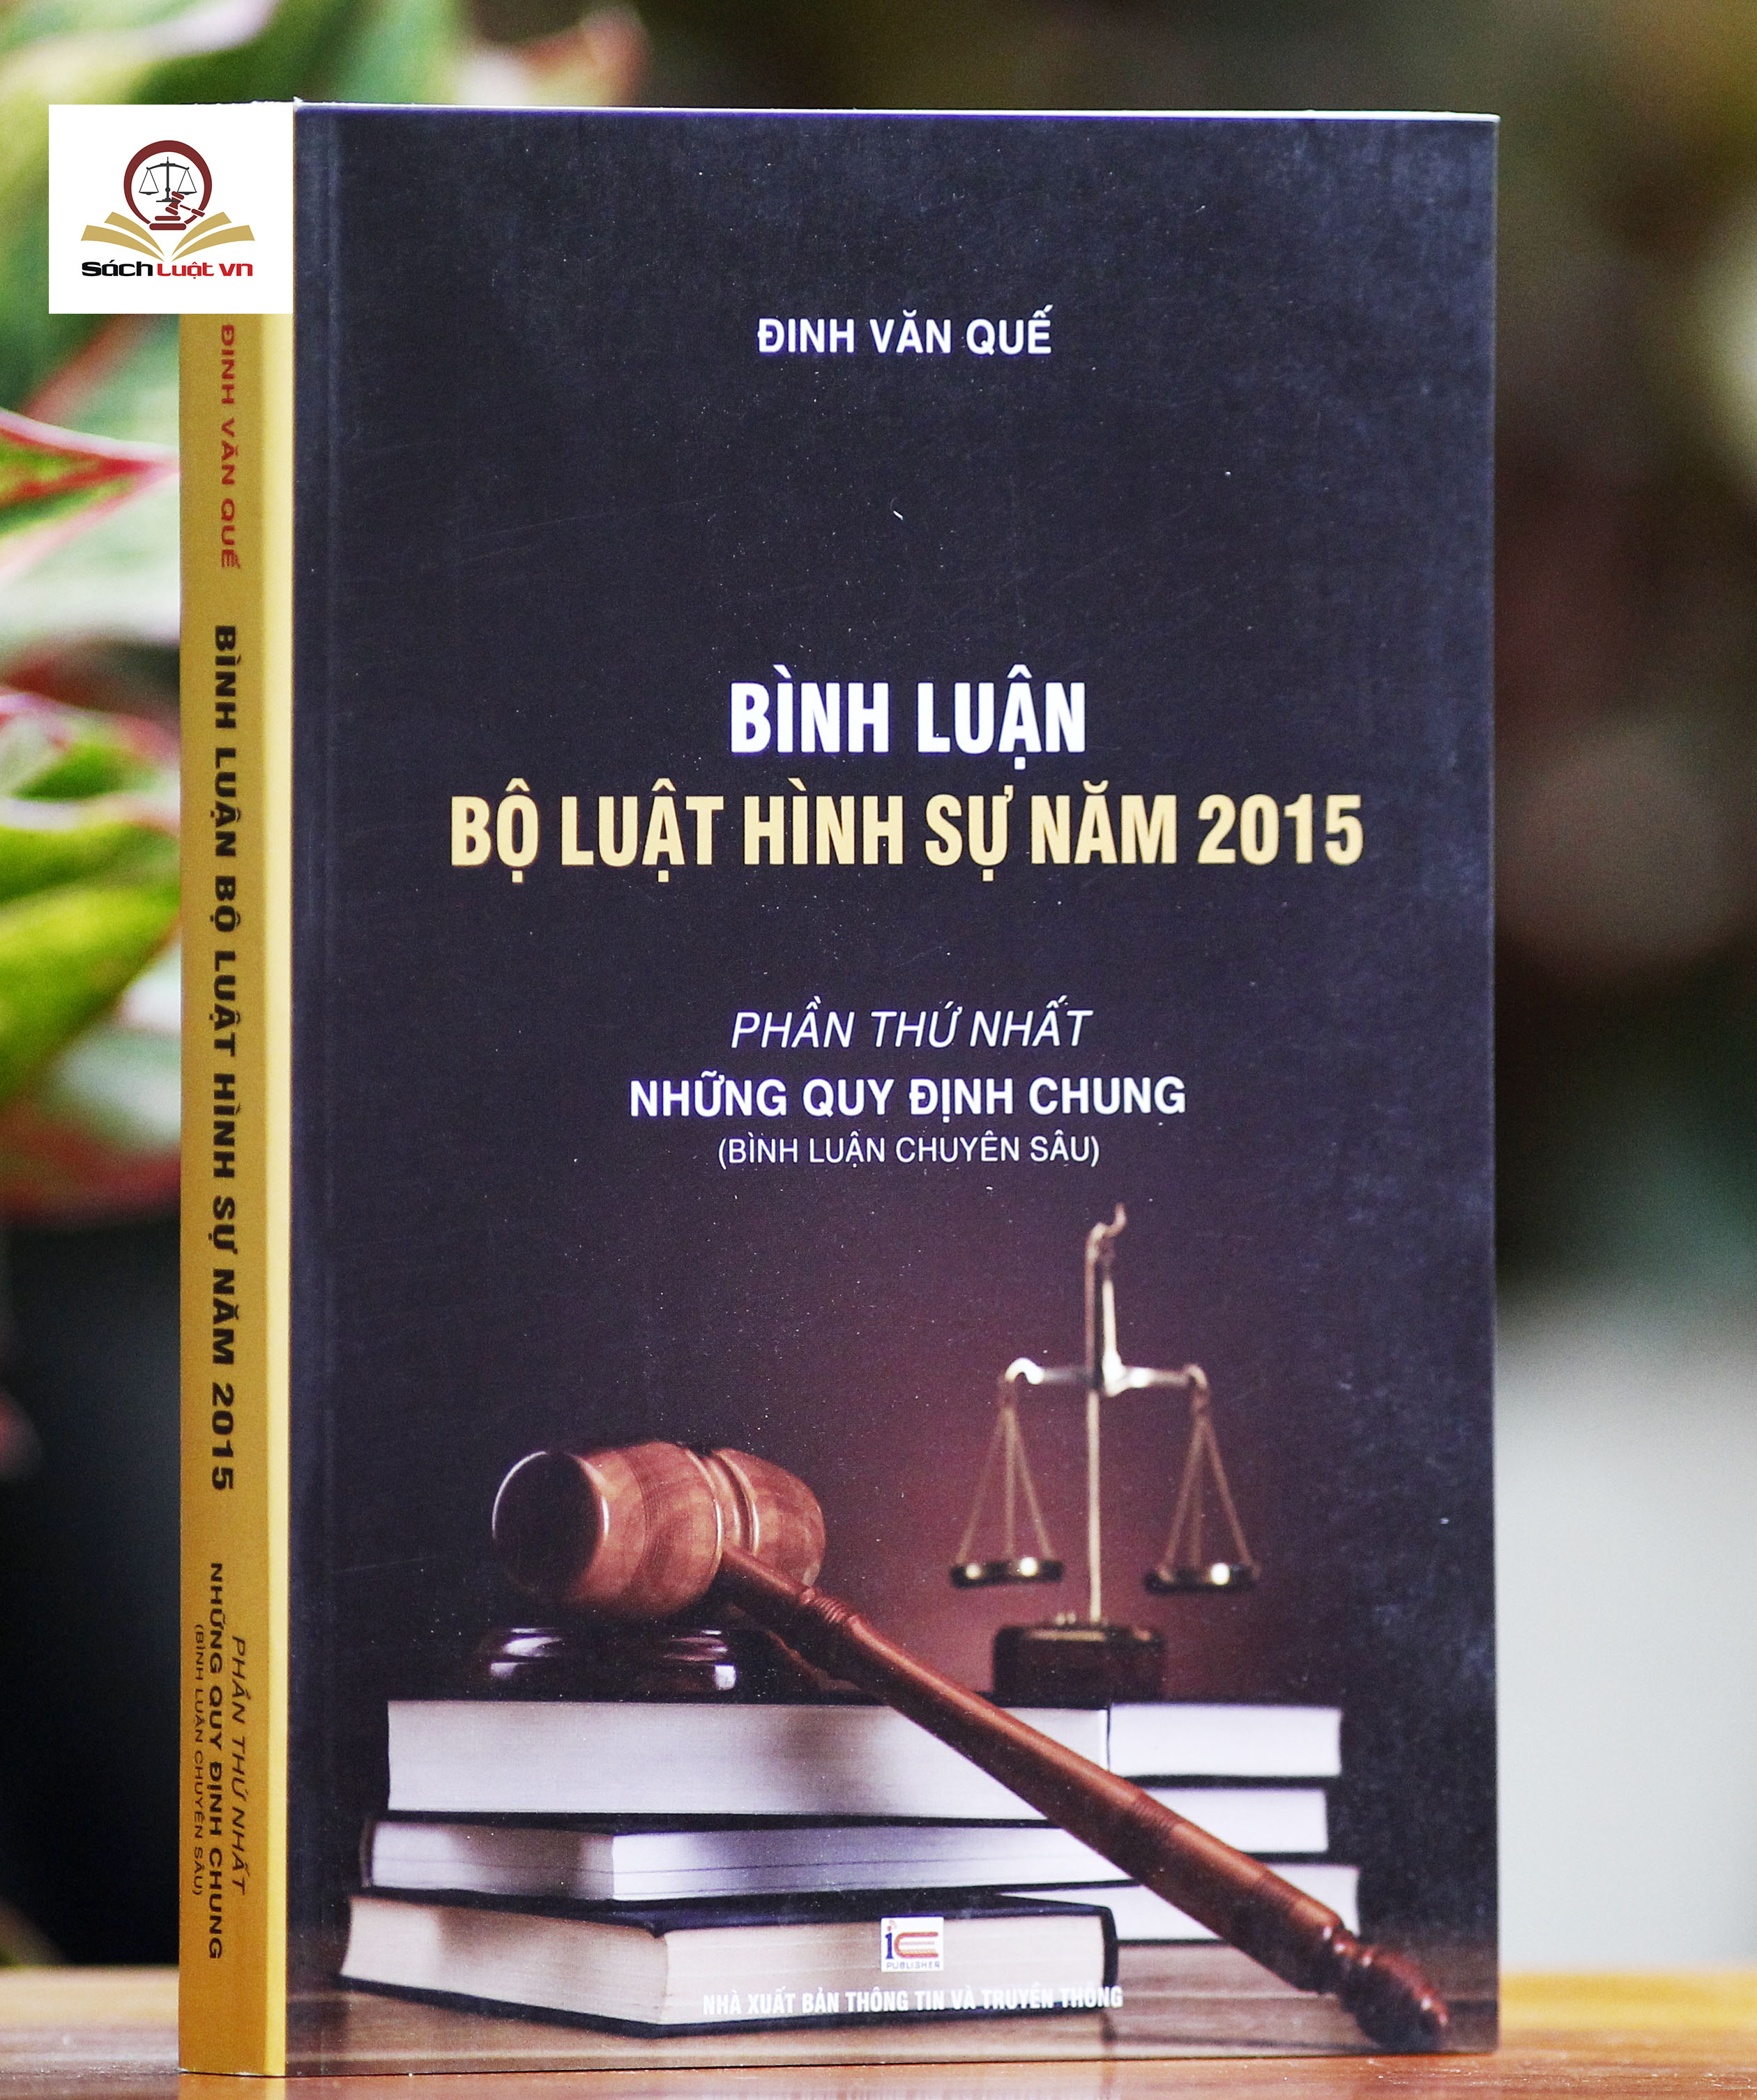 Bình luận Bộ Luật Hình Sự năm 2015 (Bộ 9 cuốn của tác giả Đinh Văn Quế)